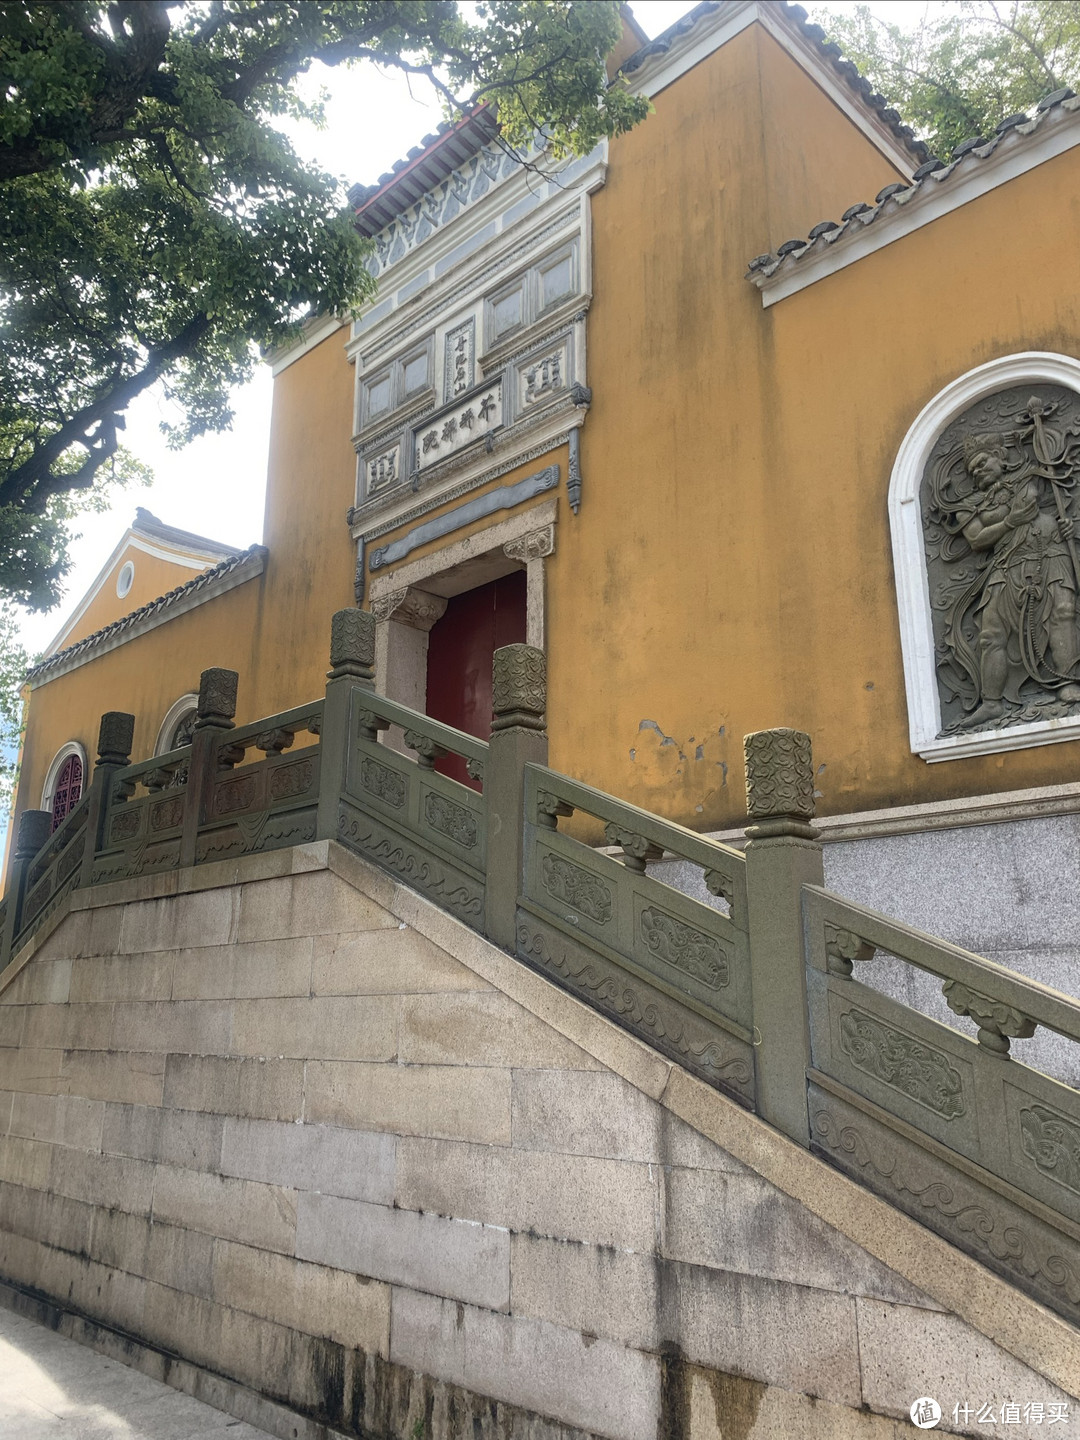 第一站芥瓶庵，新建的建筑，前面有个还可以的小广场供导游给游客们白活一段，普及一些别踩门槛别拍佛像之类基本的佛教观光常识。